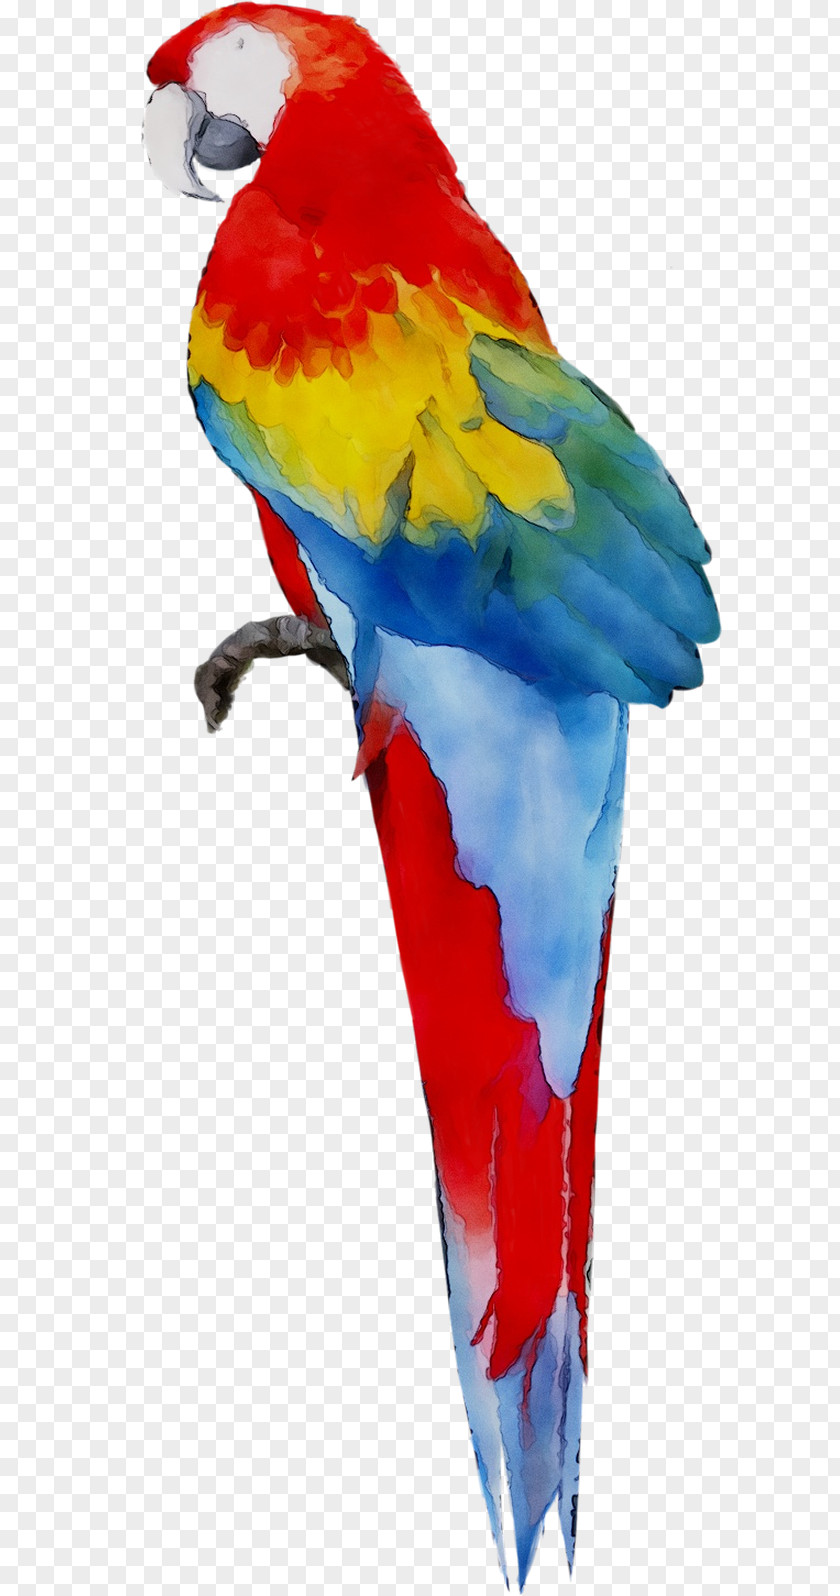 Macaw Parakeet Feather Beak Pet PNG